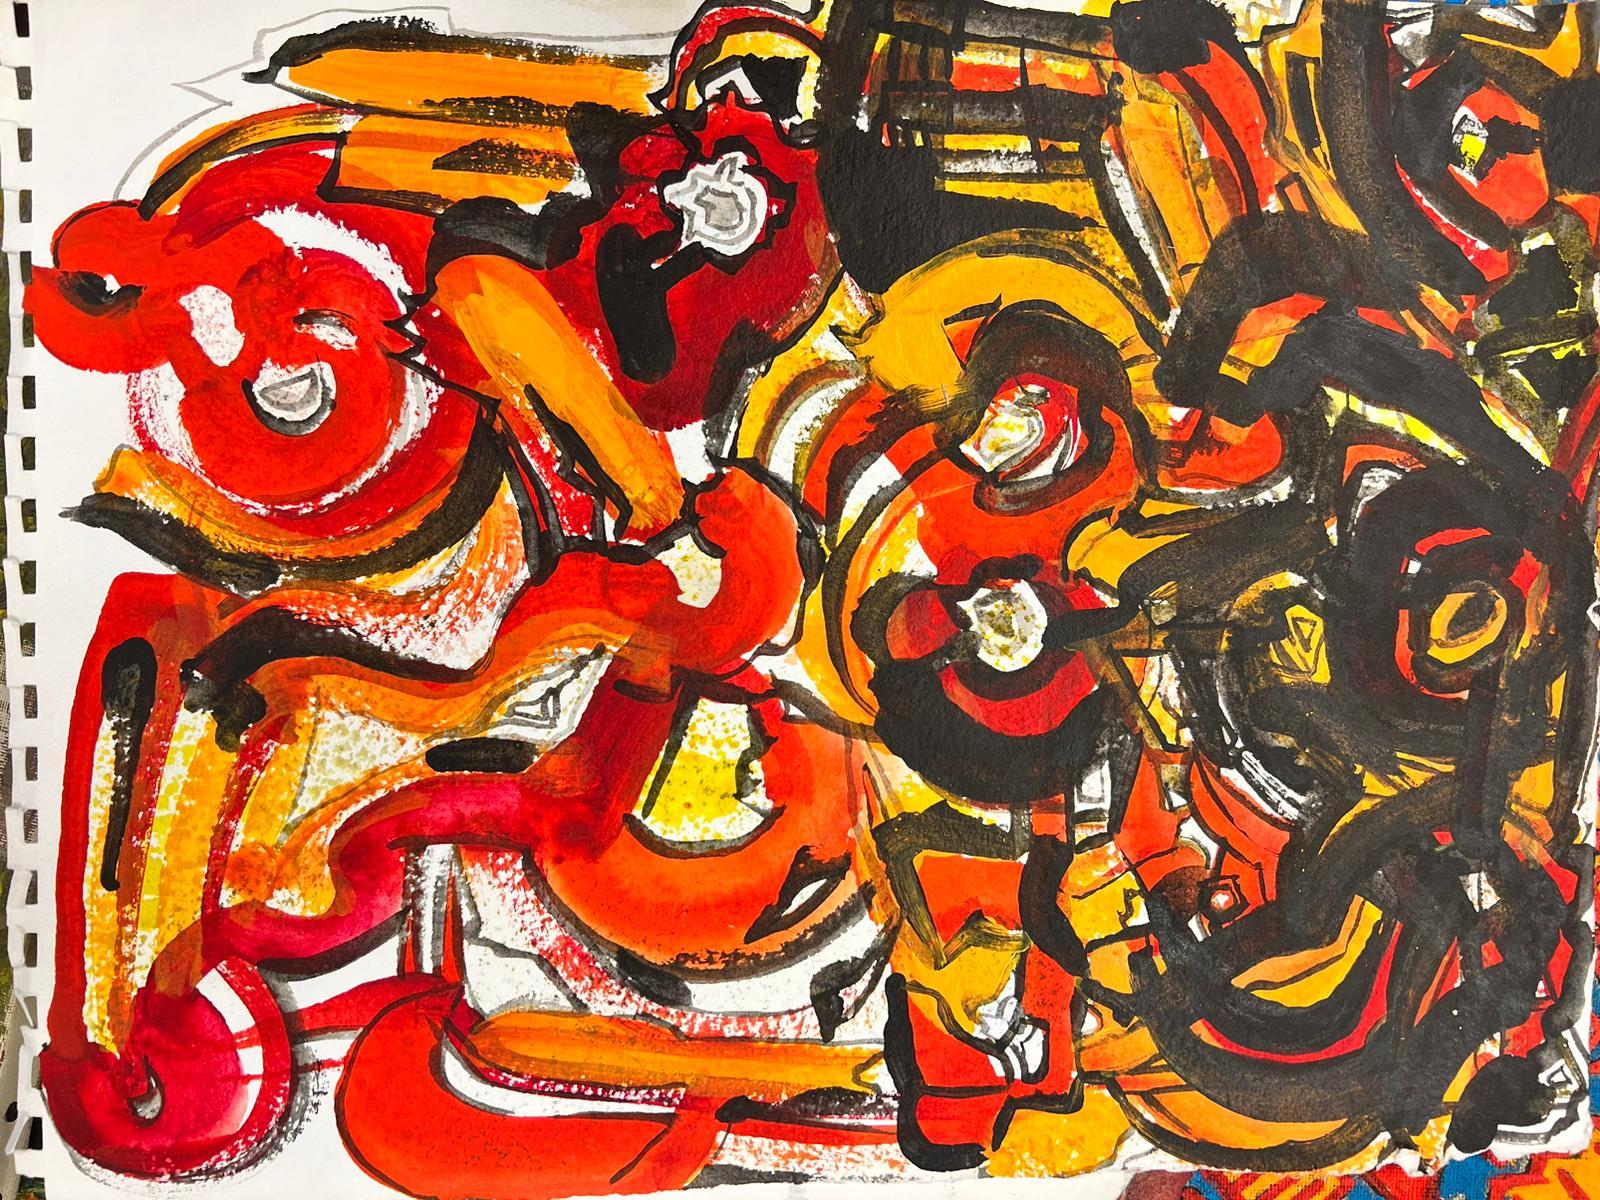 Abstrakt-expressionistische Komposition
von Jacques COULAIS (1955-2011)
Gouache-Malerei auf Papier/Karte
ungerahmt: 11 x 14,5 Zoll
Zustand: sehr gut und beeindruckend
Provenienz: Alle Gemälde, die wir von diesem Künstler zum Verkauf anbieten,